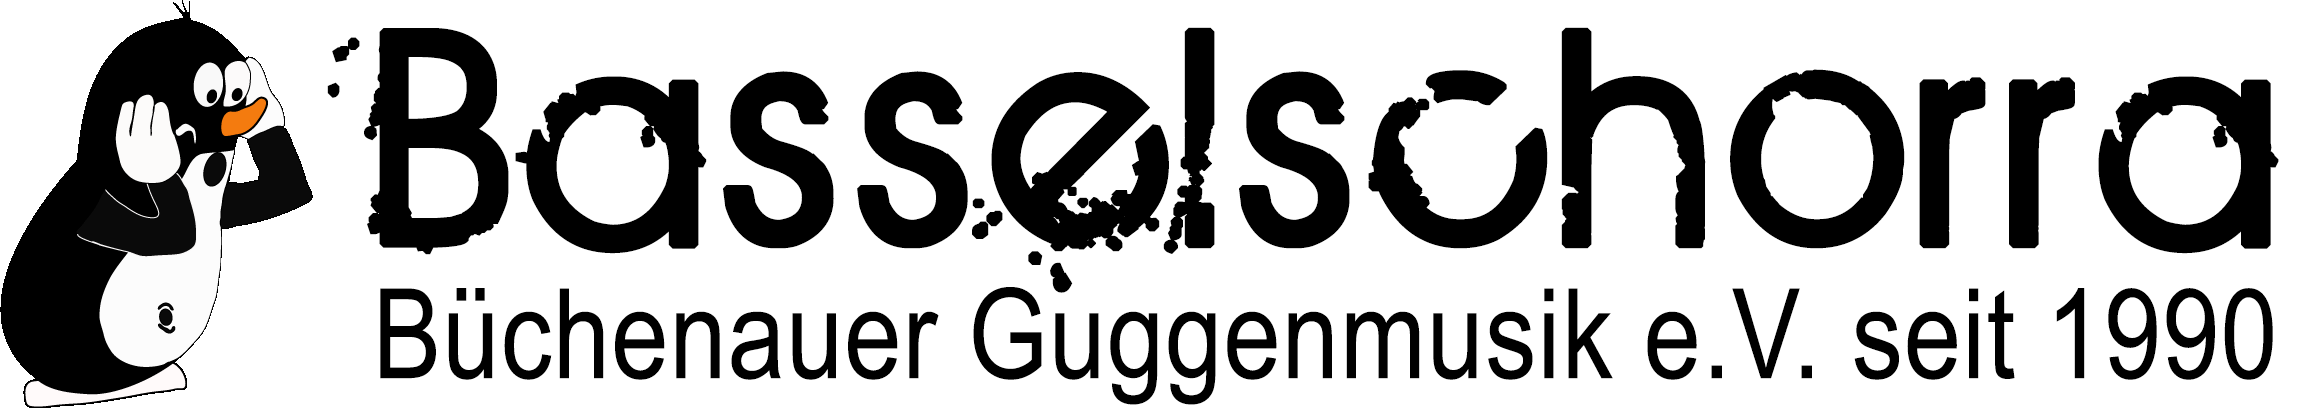 Basselschorra - Büchenauer Guggemusik